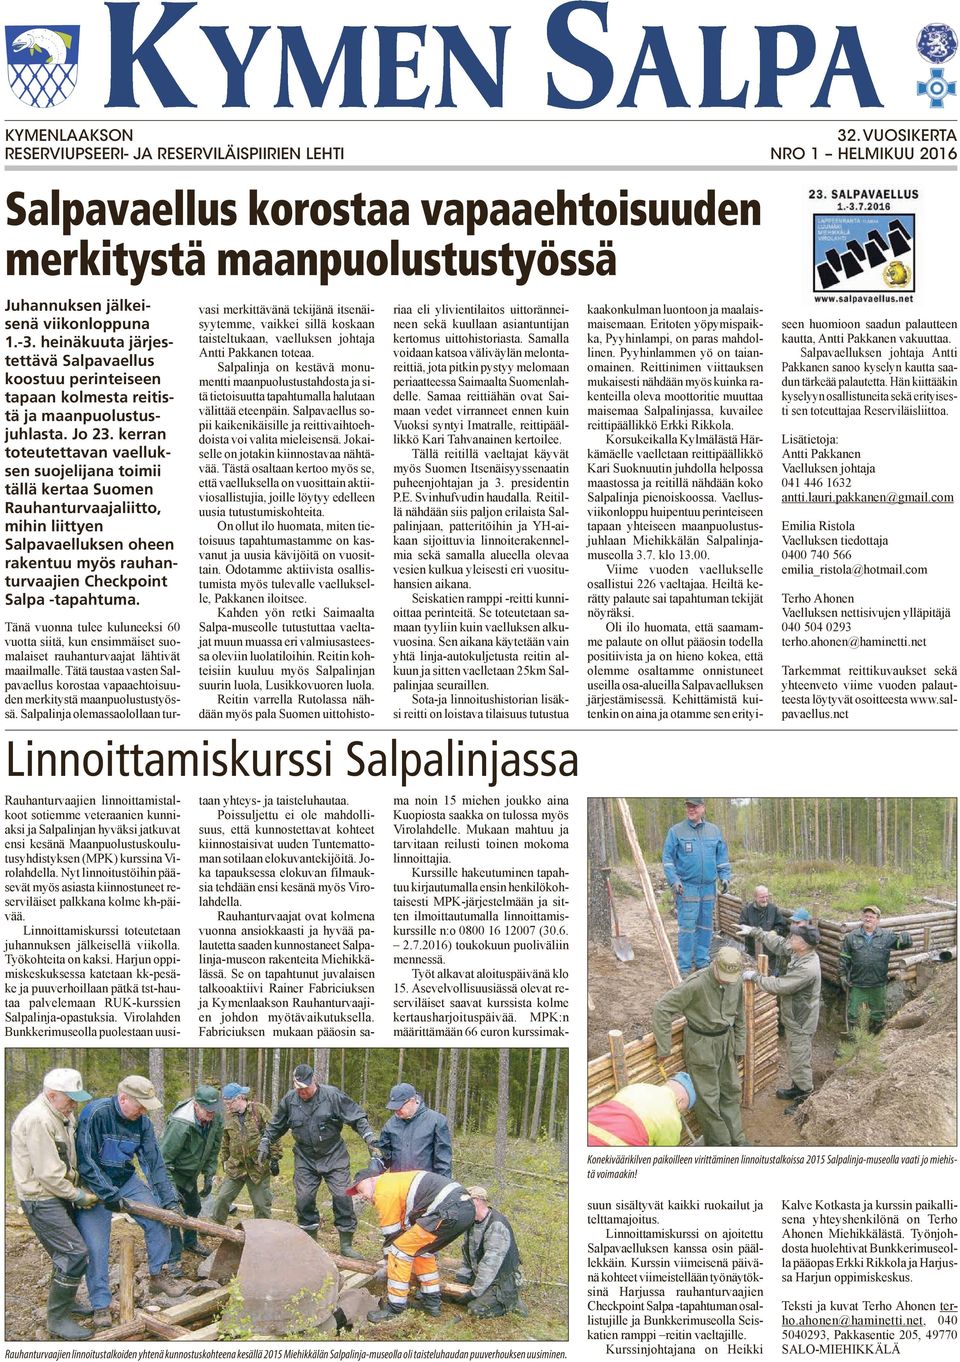 kerran toteutettavan vaelluksen suojelijana toimii tällä kertaa Suomen Rauhanturvaajaliitto, mihin liittyen Salpavaelluksen oheen rakentuu myös rauhanturvaajien Checkpoint Salpa -tapahtuma.